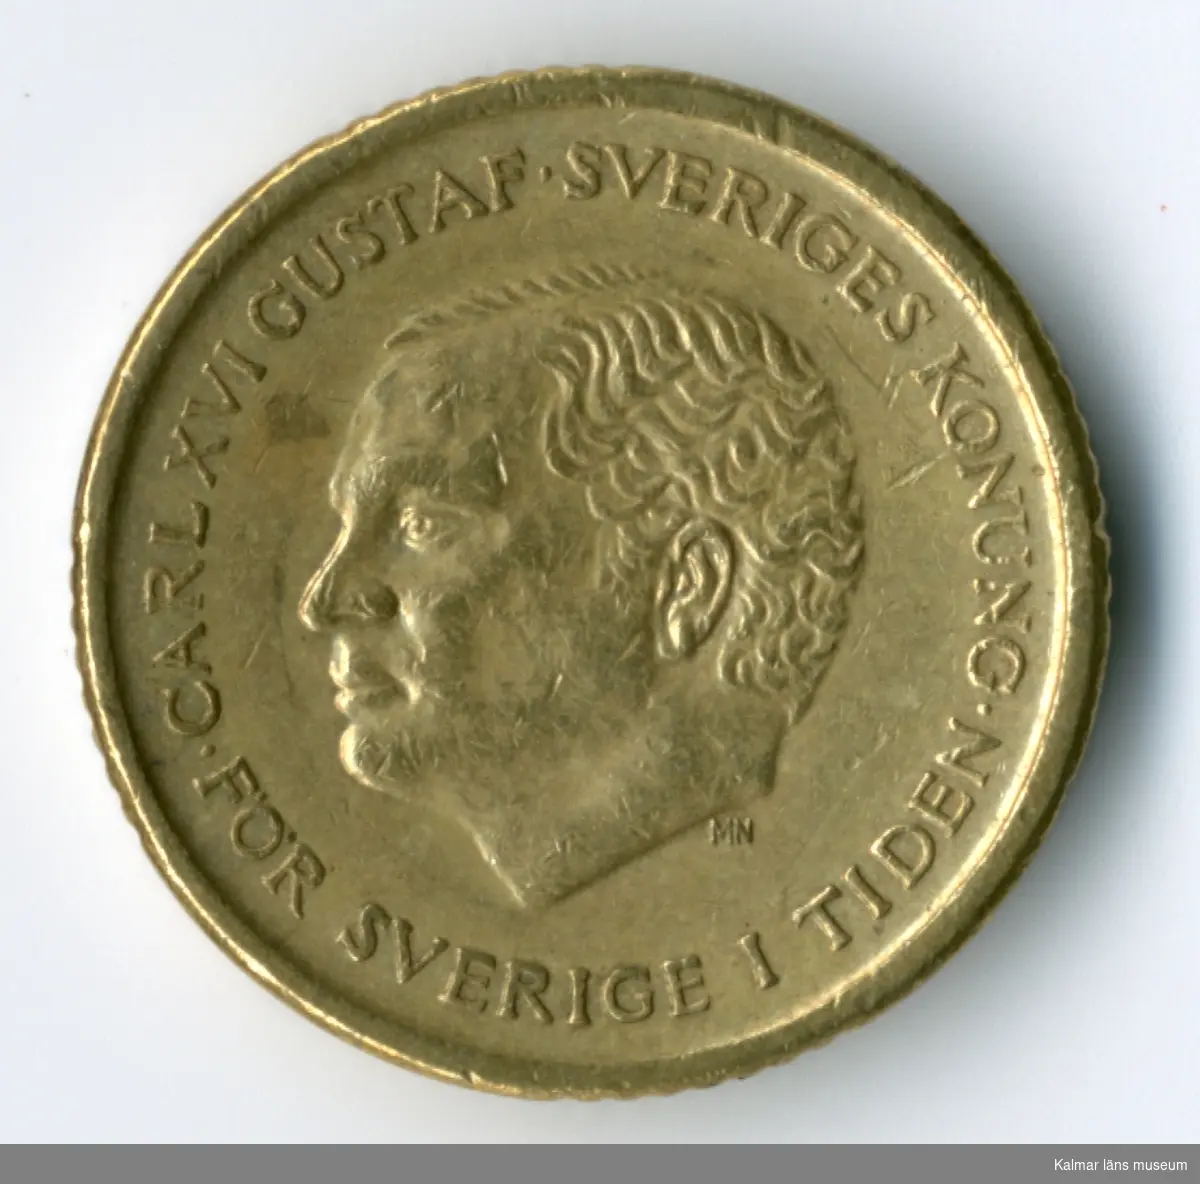 KLM 46167:83 Mynt, av metall, 10 kronor. Utgiven 1991. Under Carl XVI Gustafs tid.